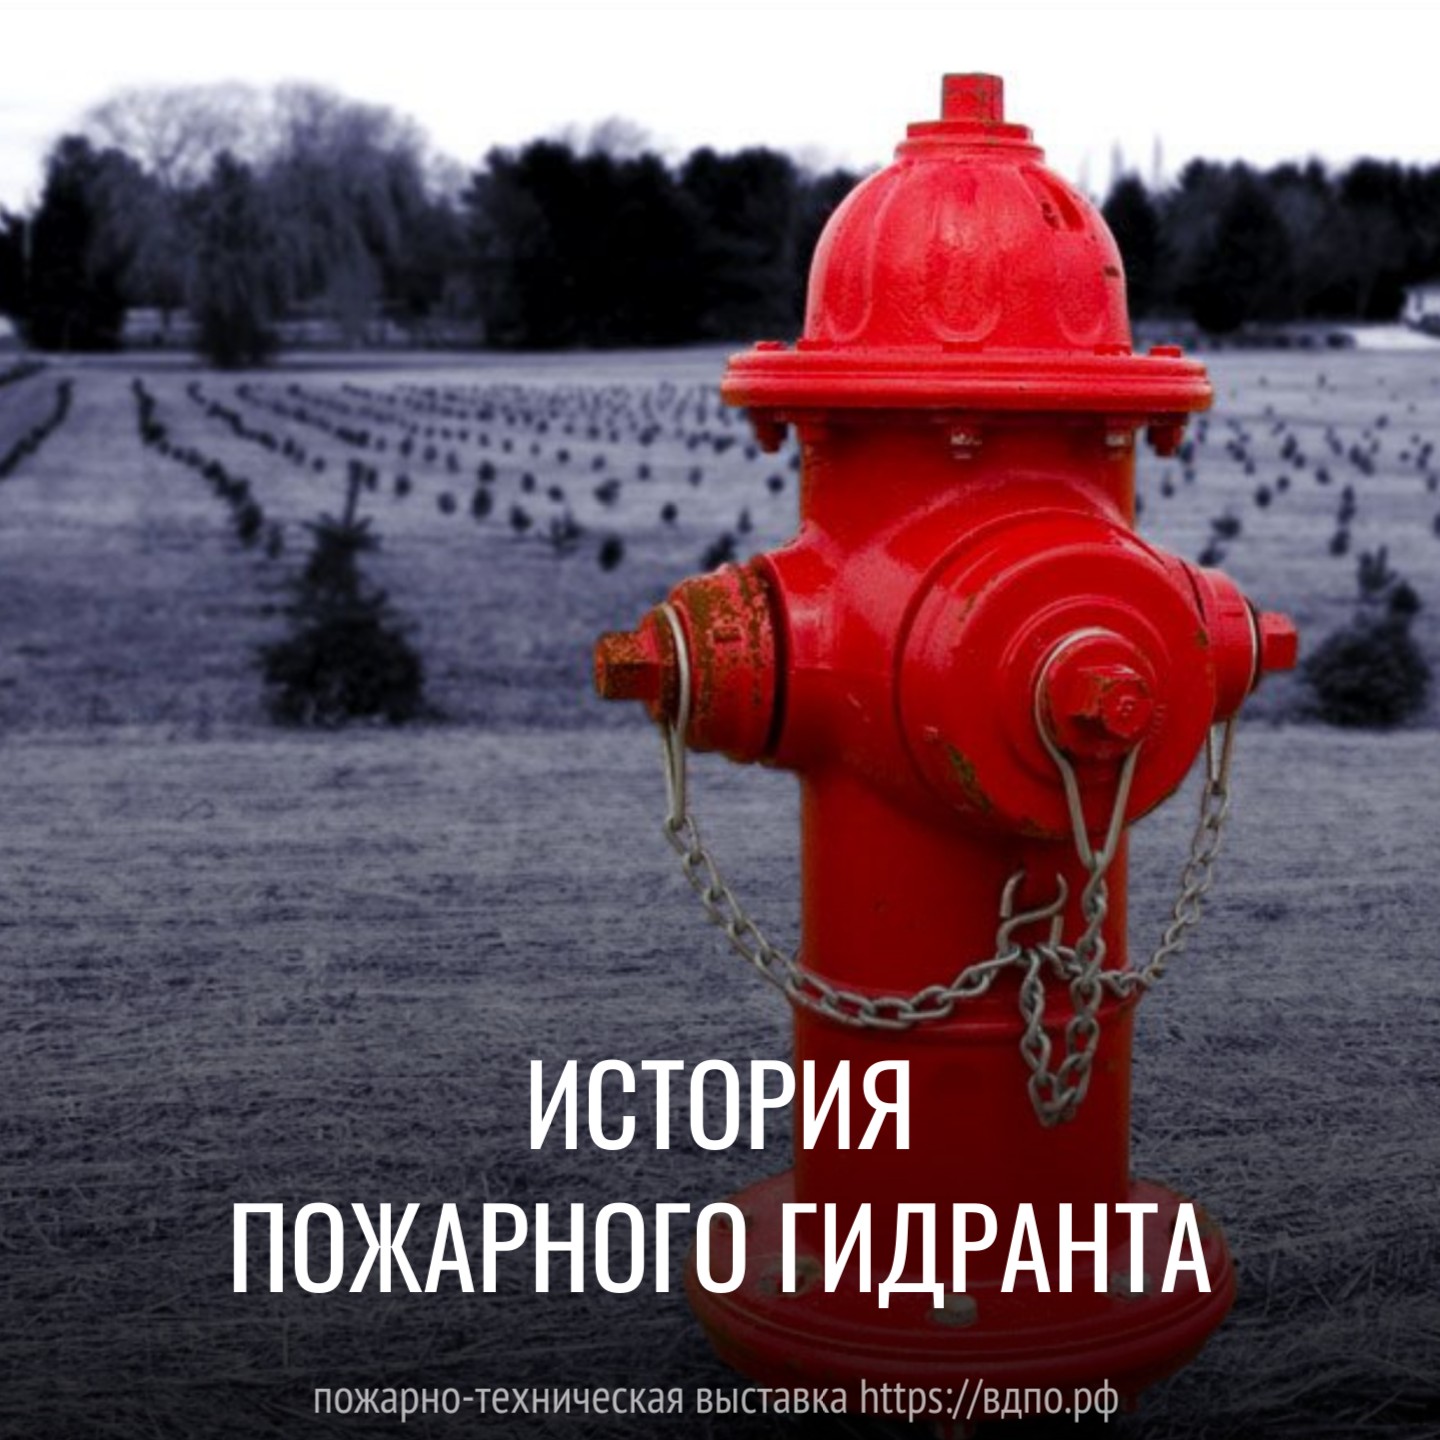 История пожарного гидранта  В начале 1800-х годов в России уже стали появляться водопроводы. Однако, в целях пожаротушения......